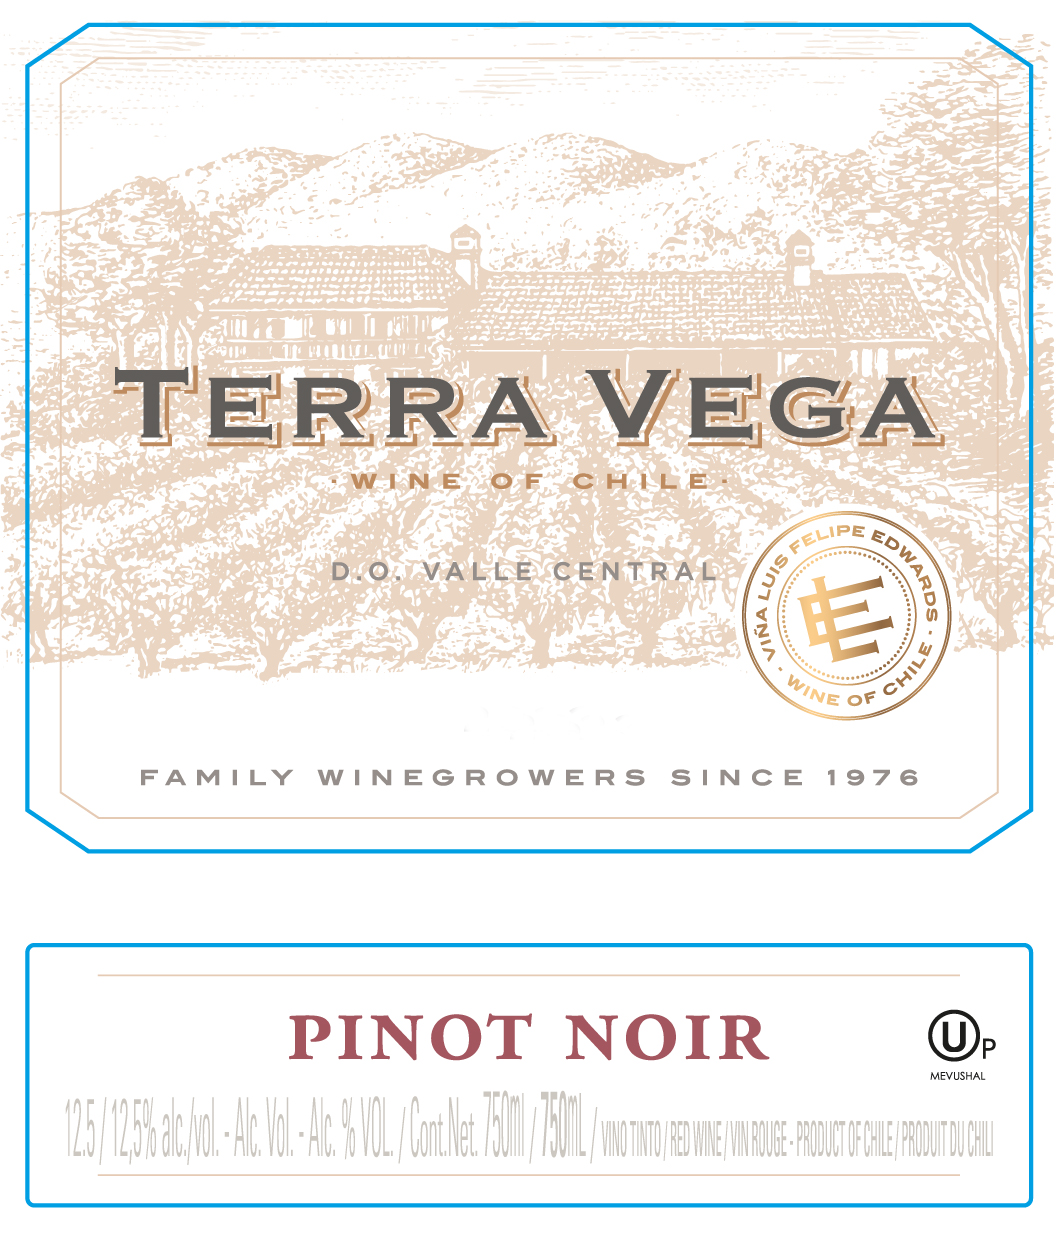 Terra Vega - Pinot Noir label